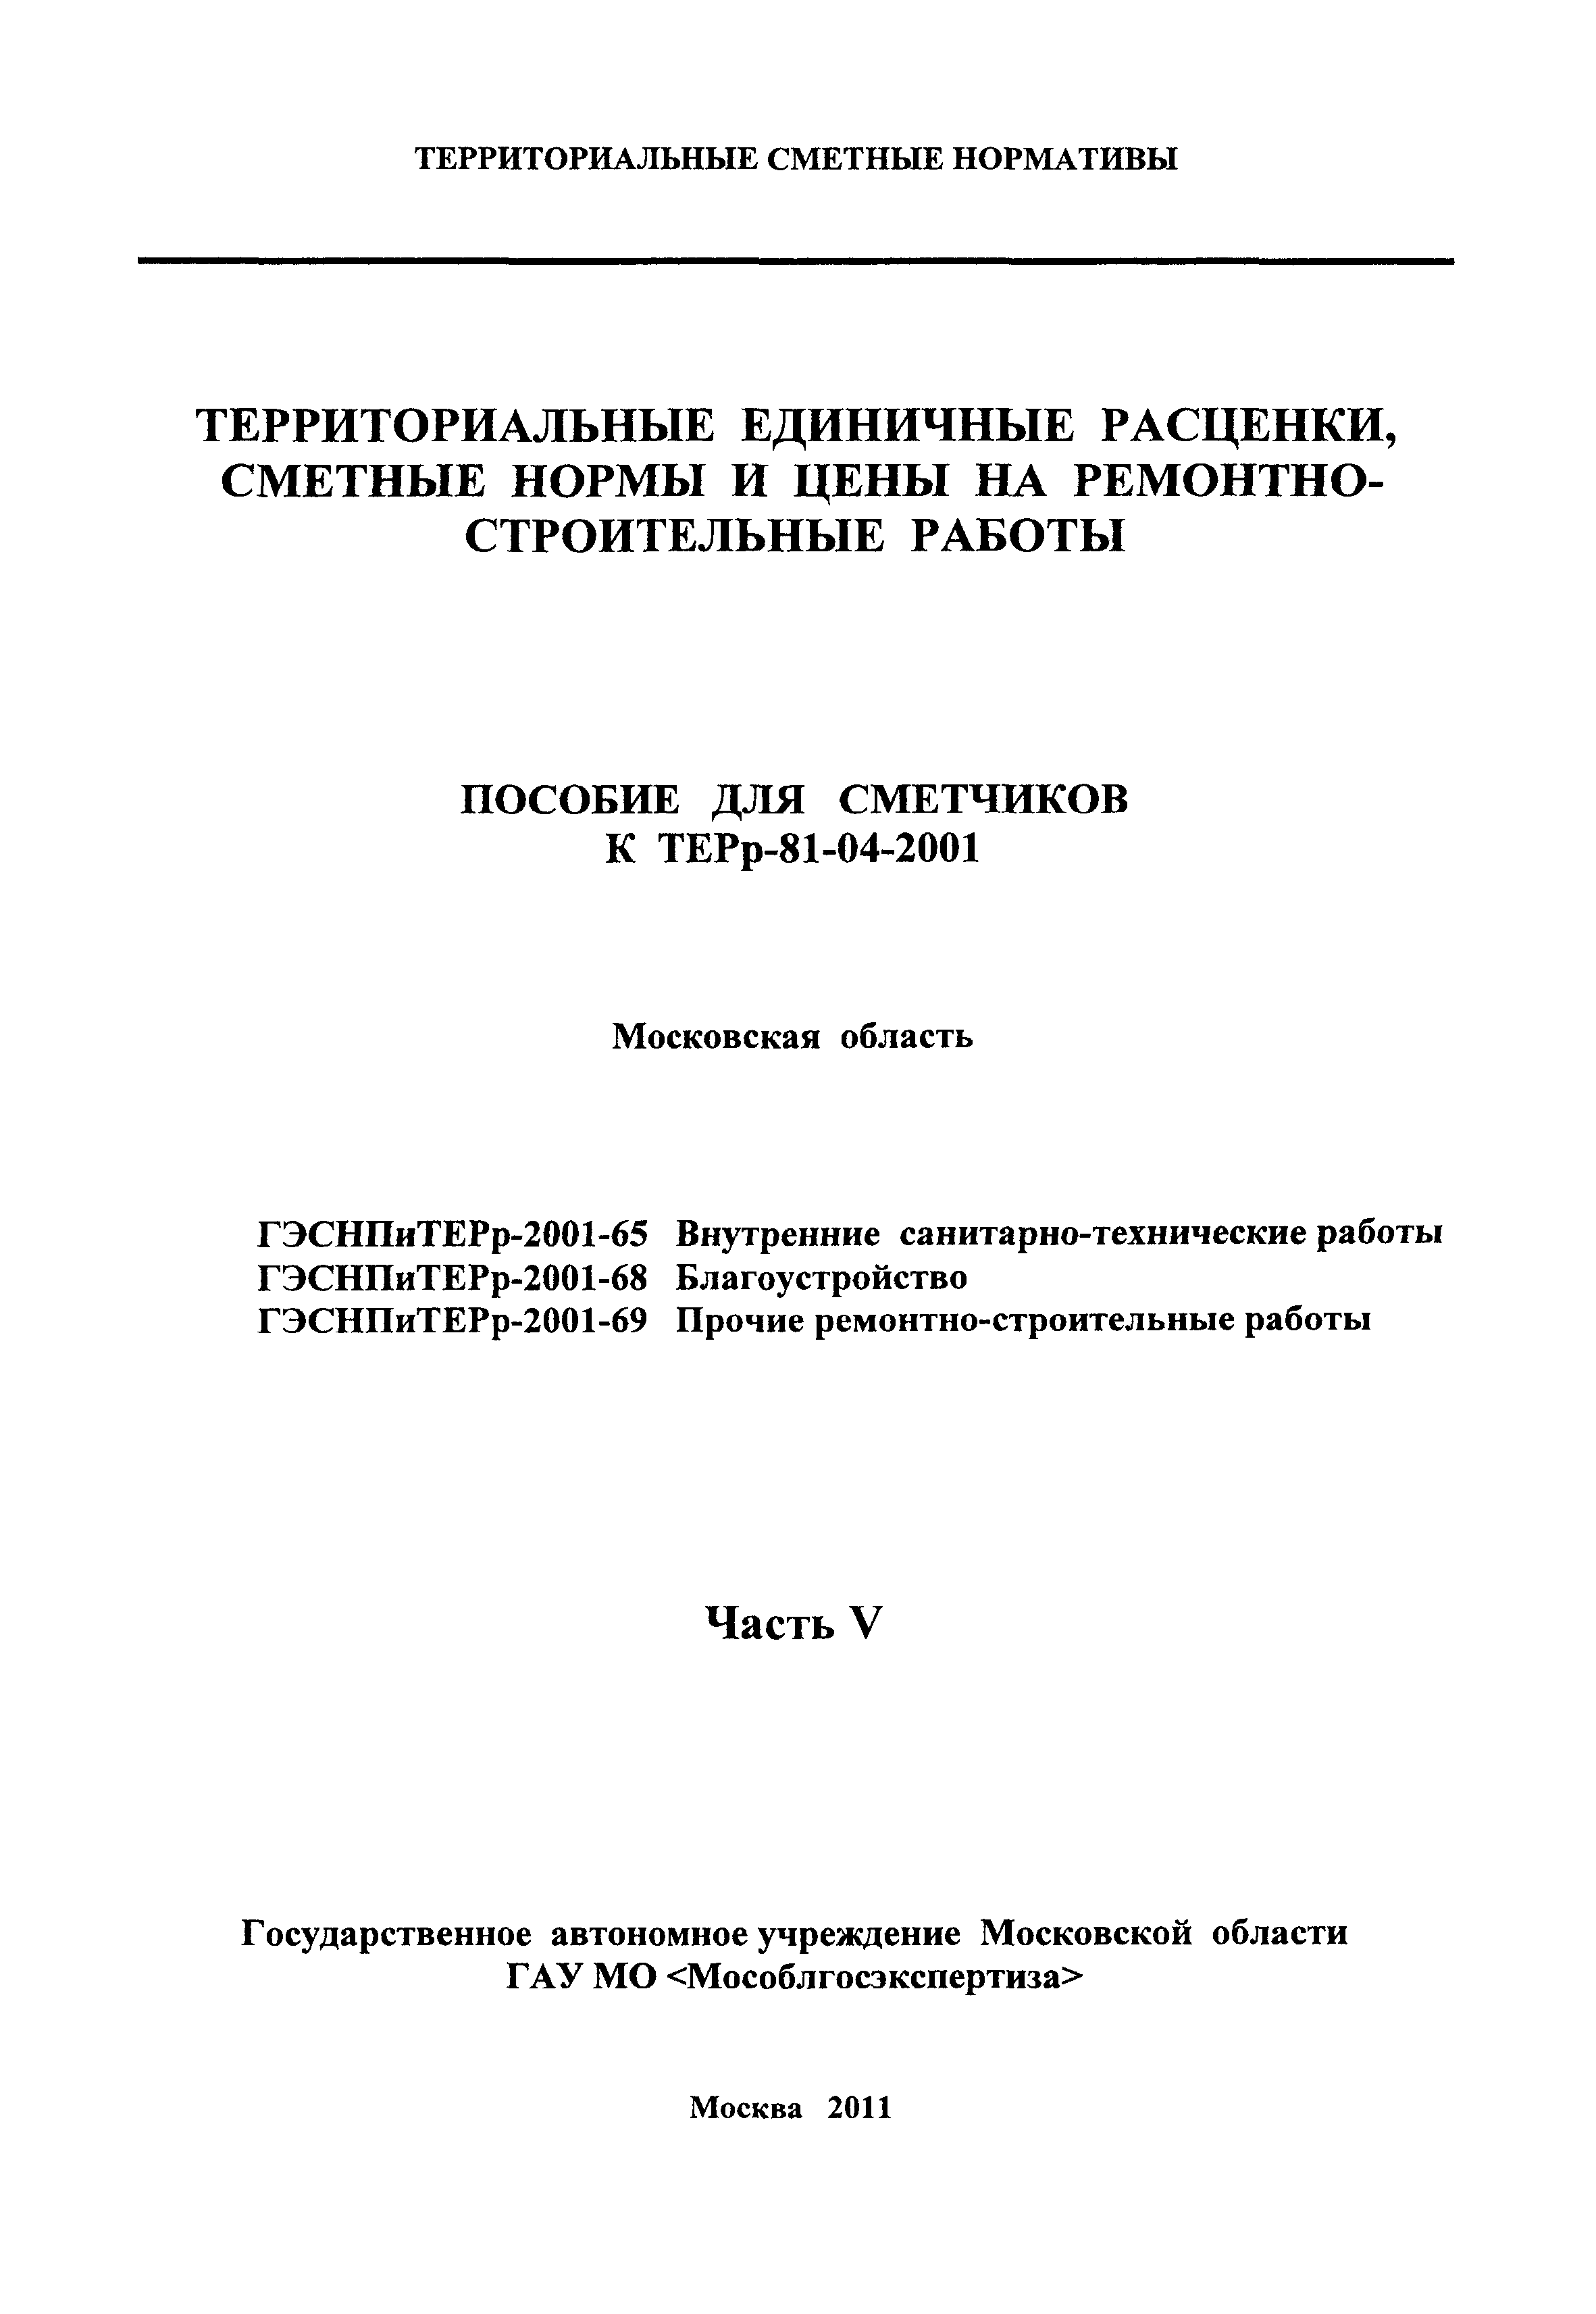 ГЭСНПиТЕРр 2001-68 Московской области